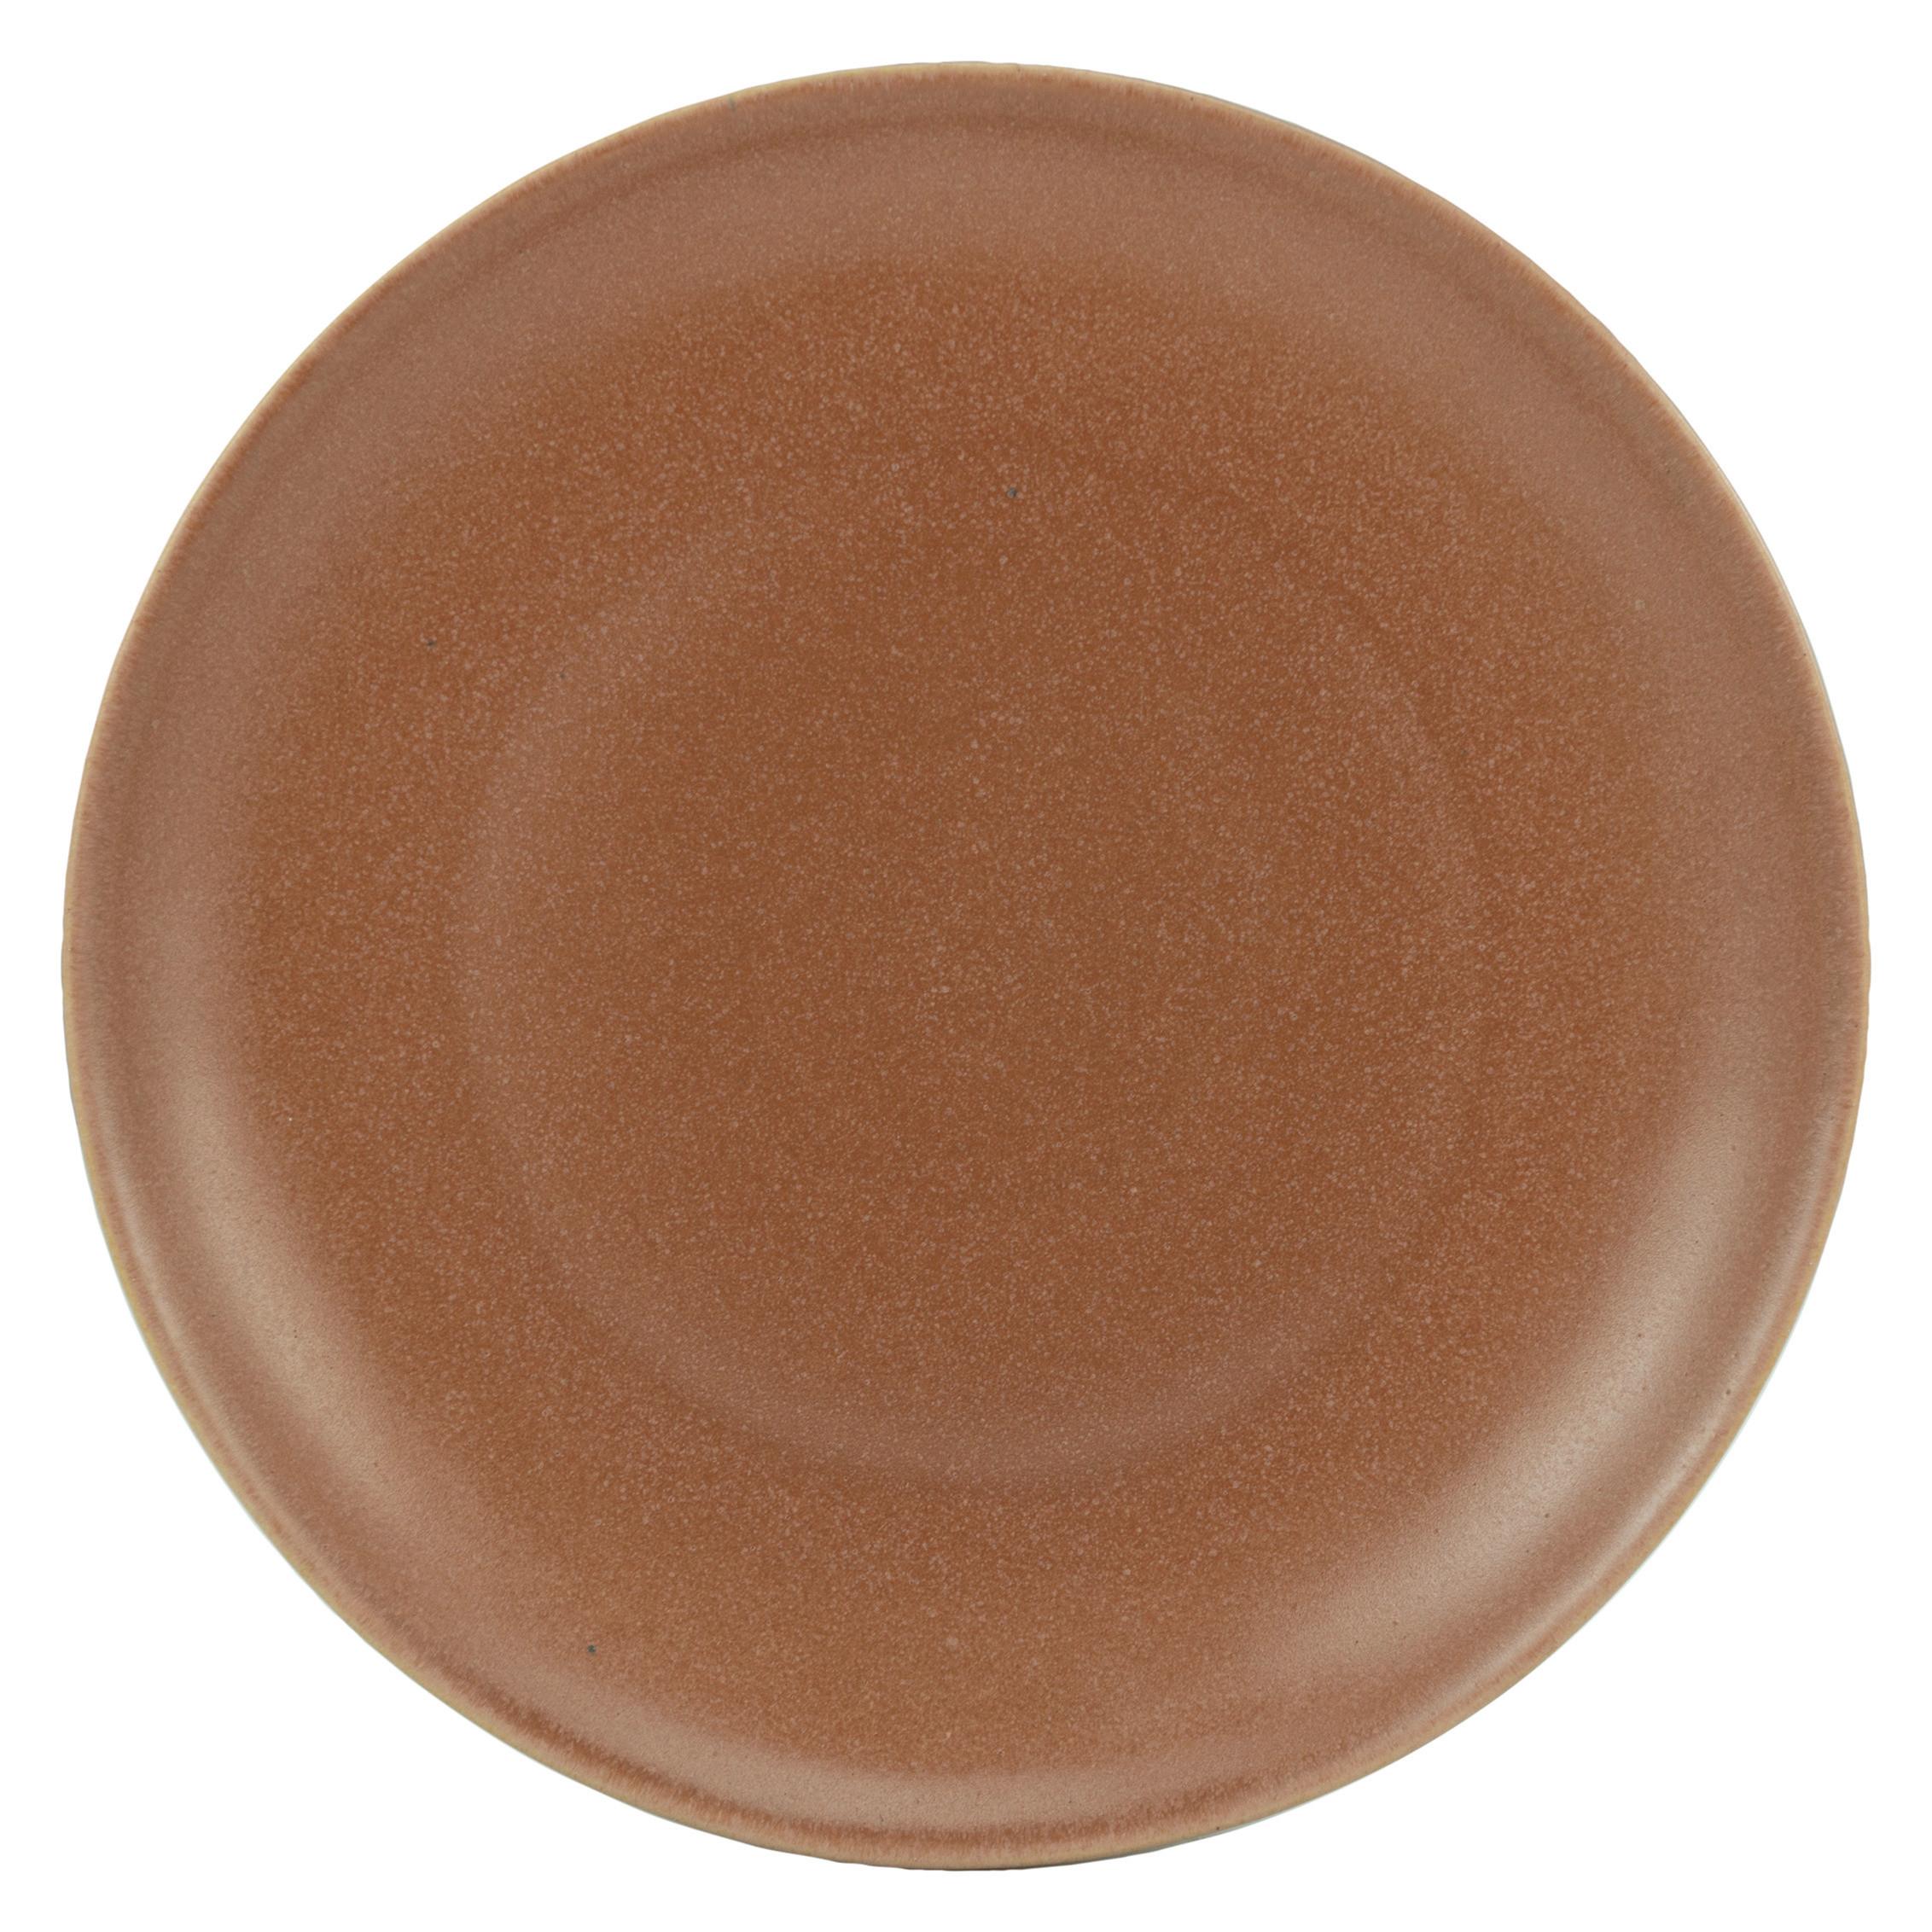 Dessertteller Sahara Ø ca. 21cm - Terra cotta, LIFESTYLE, Keramik (21/21/2,5cm) - Zandiara